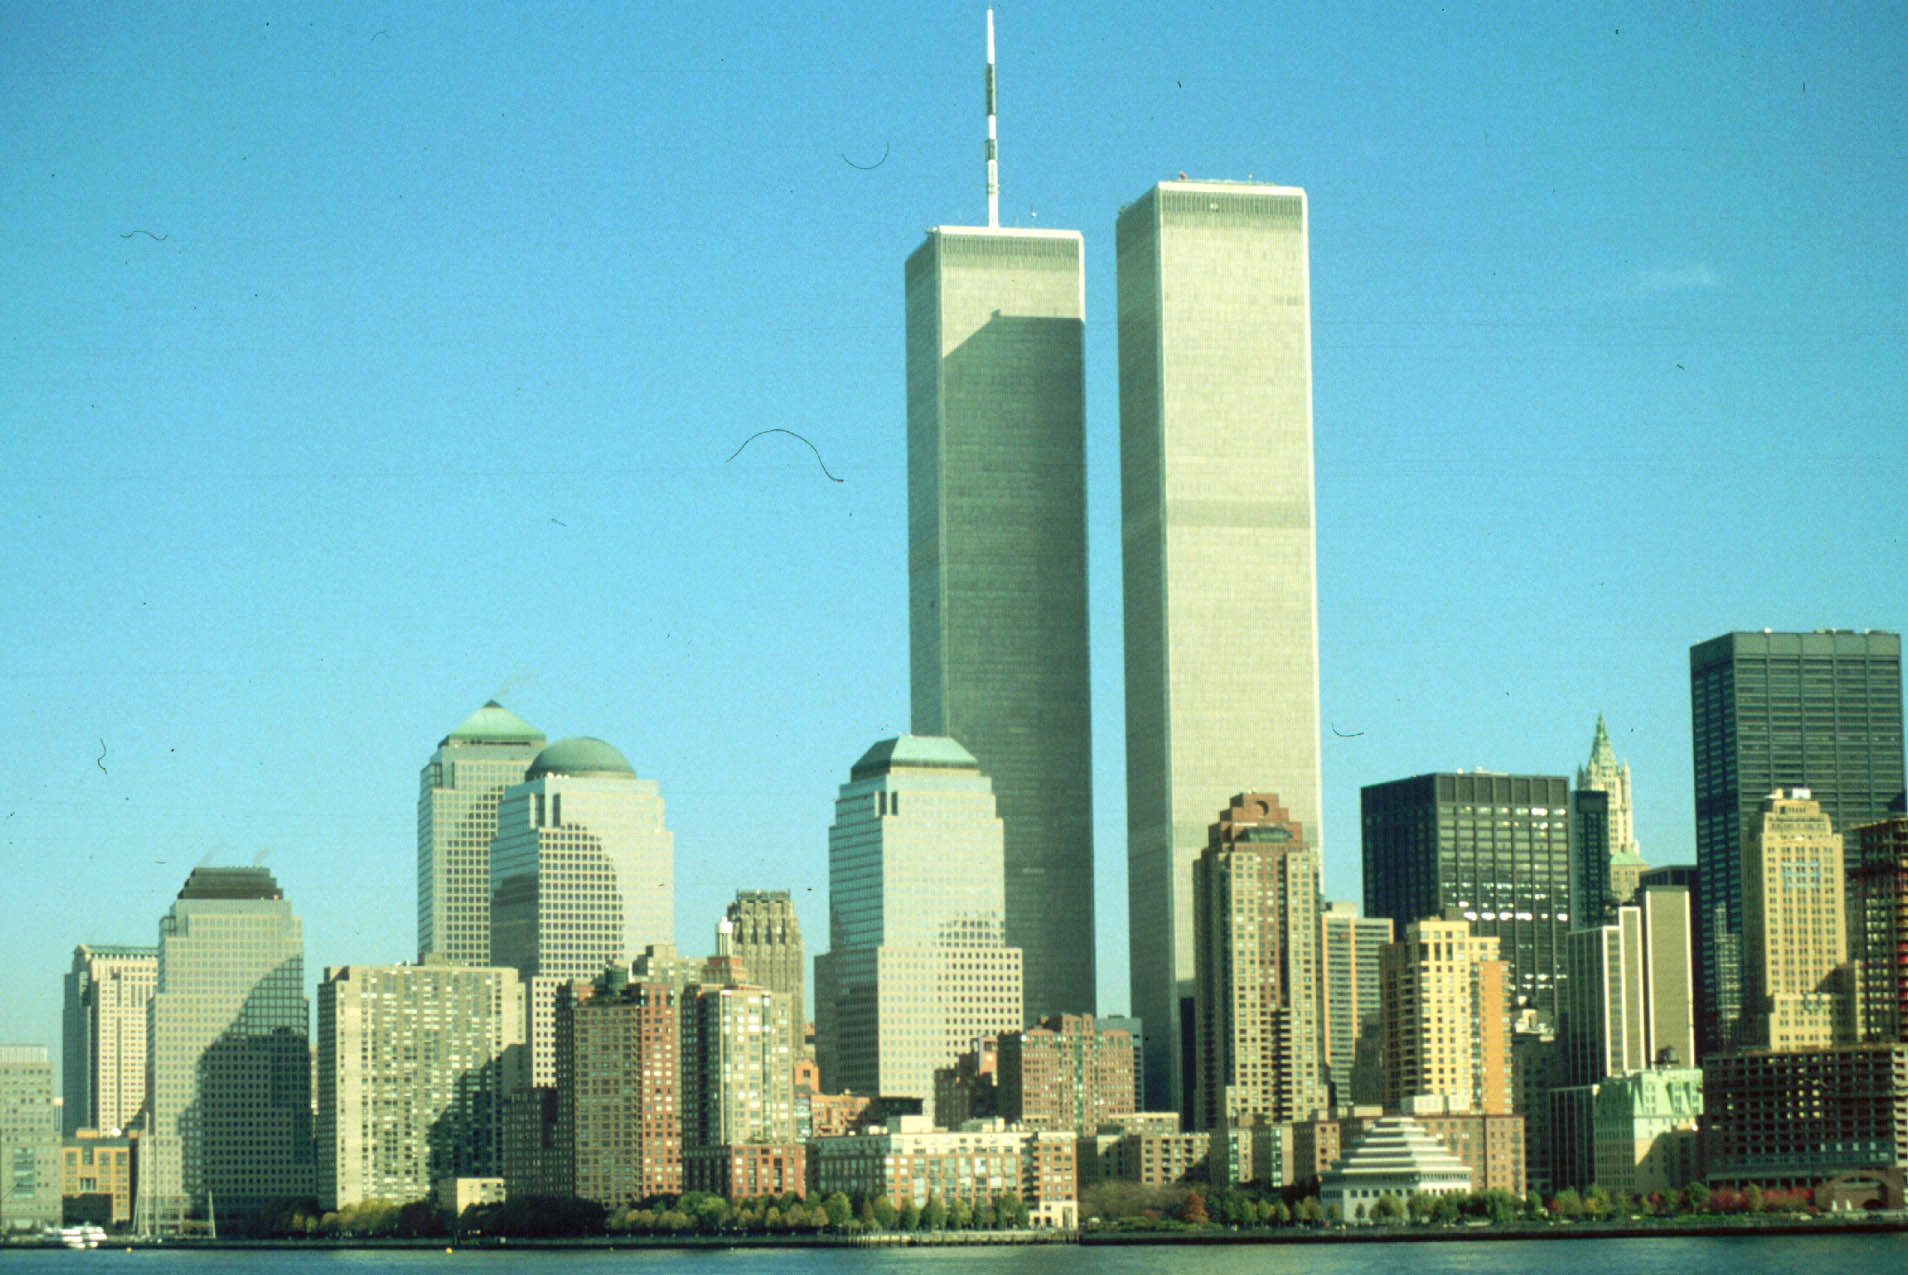  Recuerda el 9/11 en este viernes nublado con un maratón de pelis